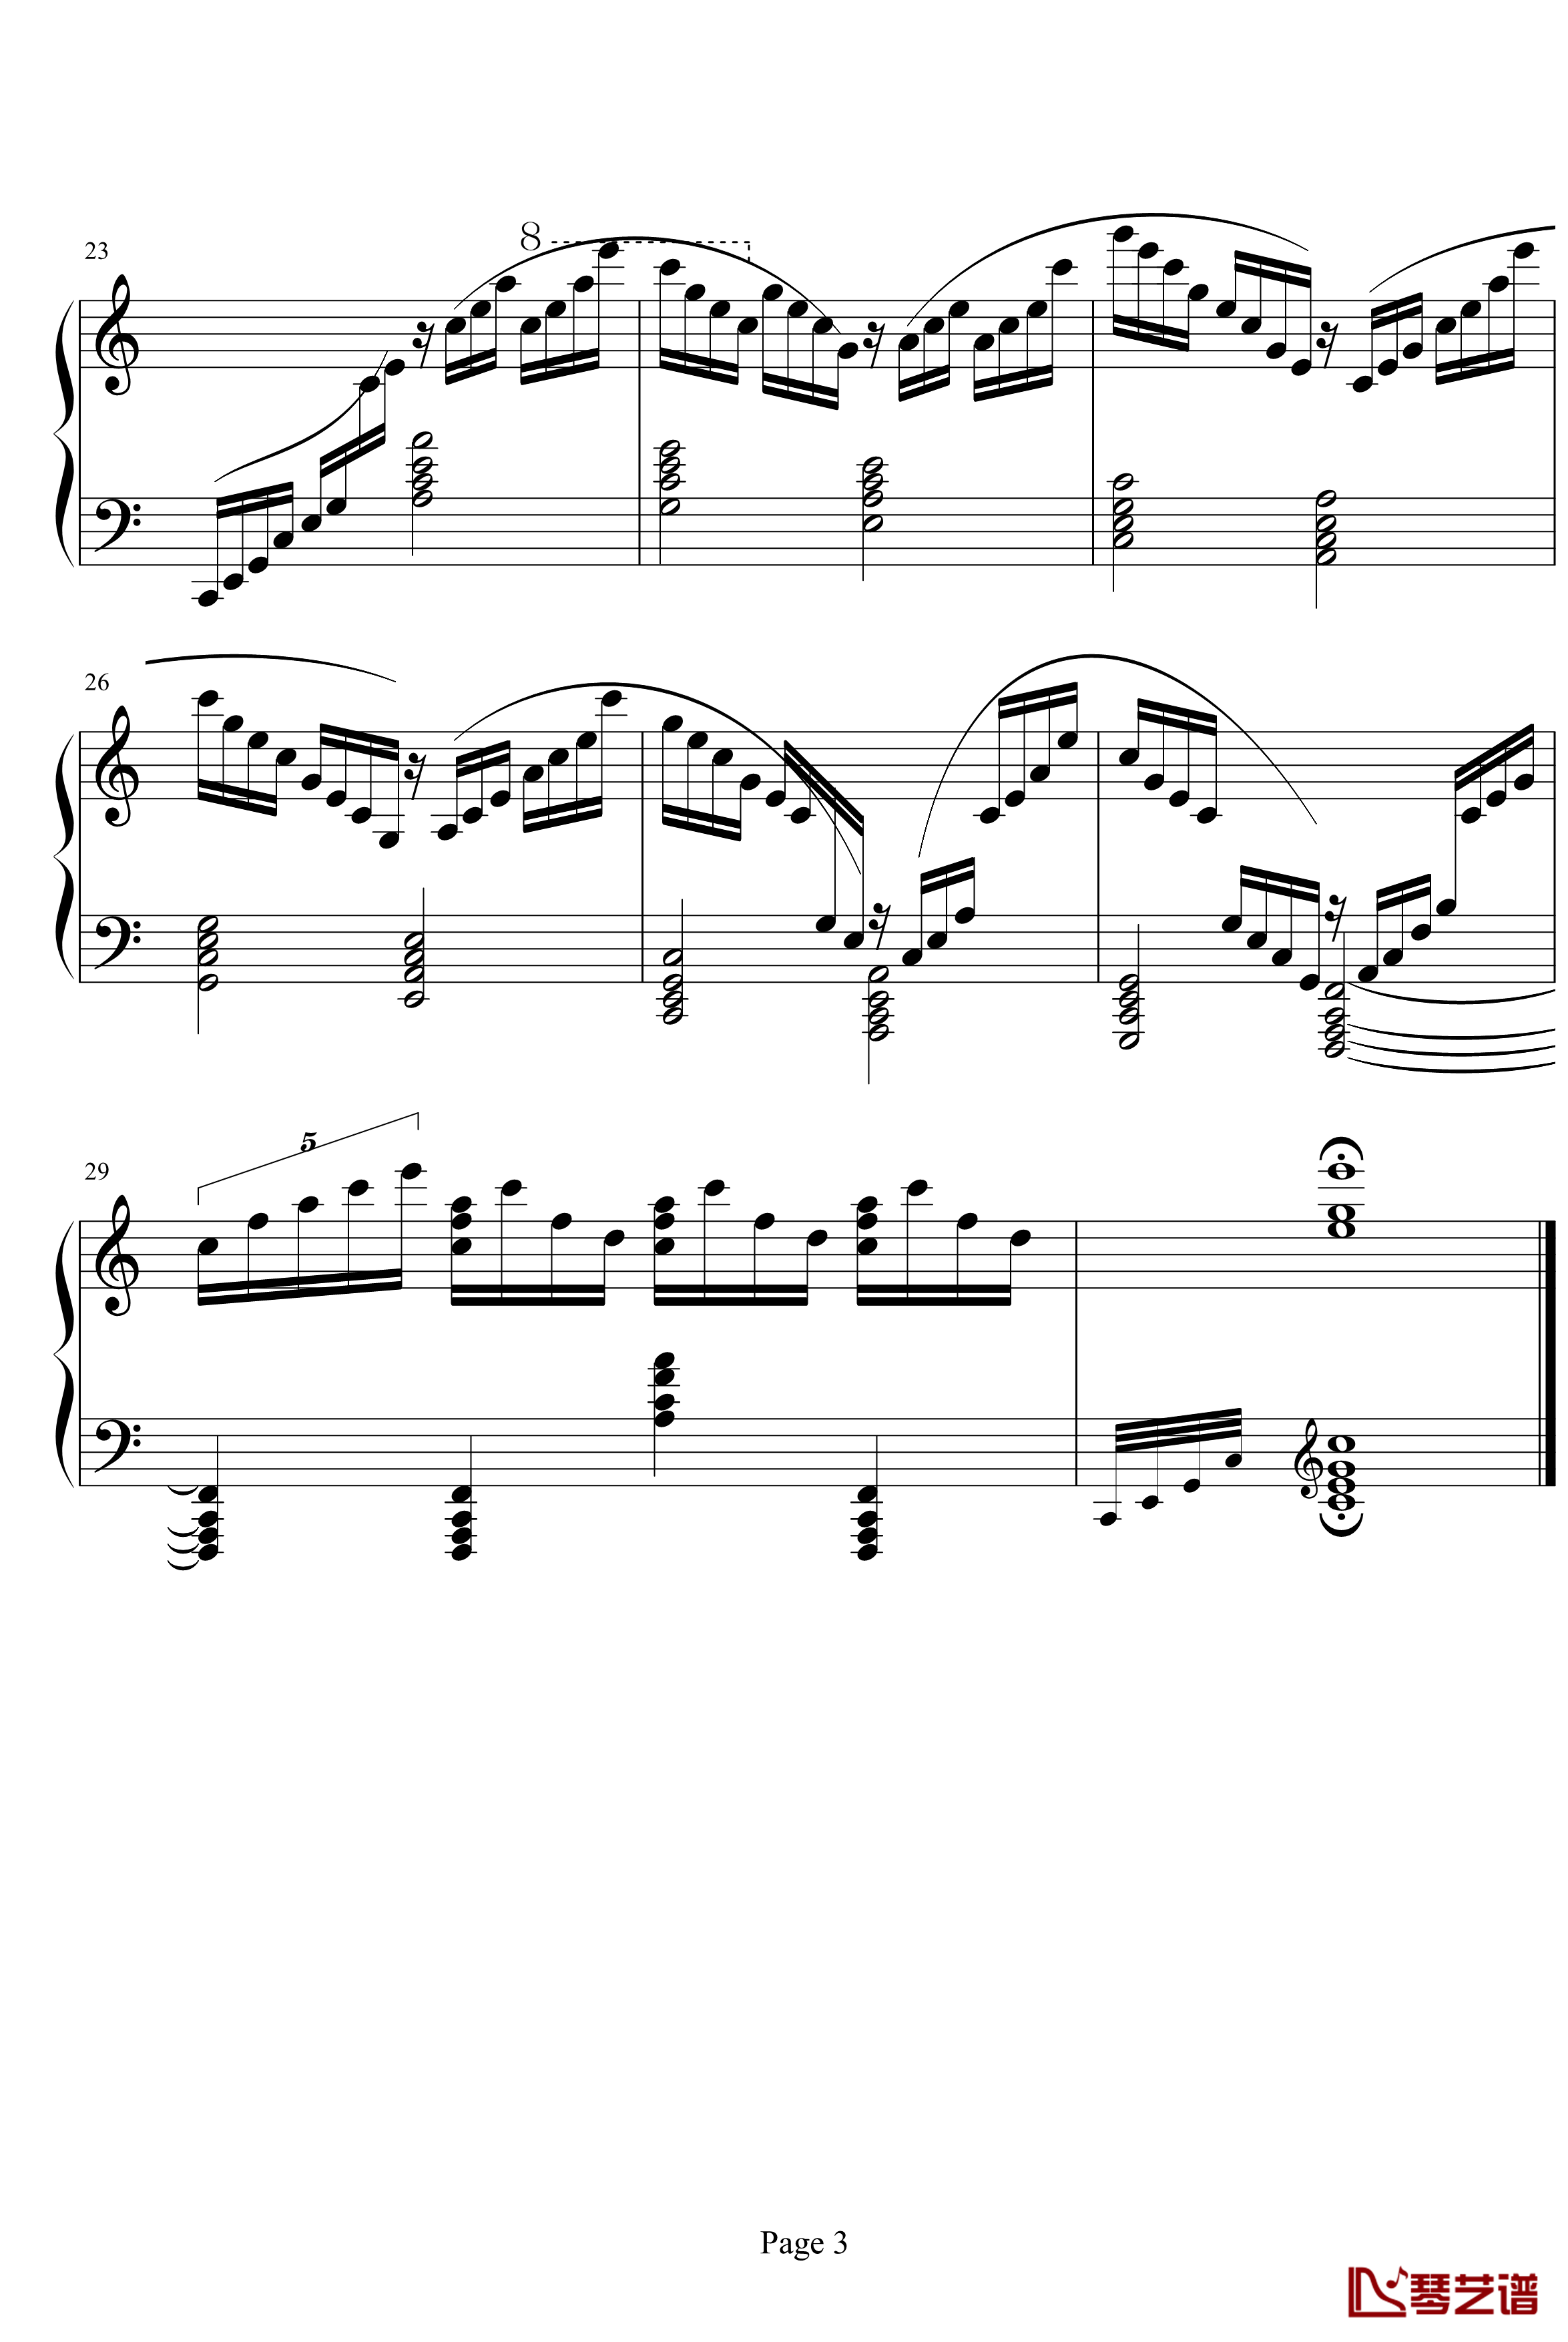 超凡练习曲第1首钢琴谱-李斯特3